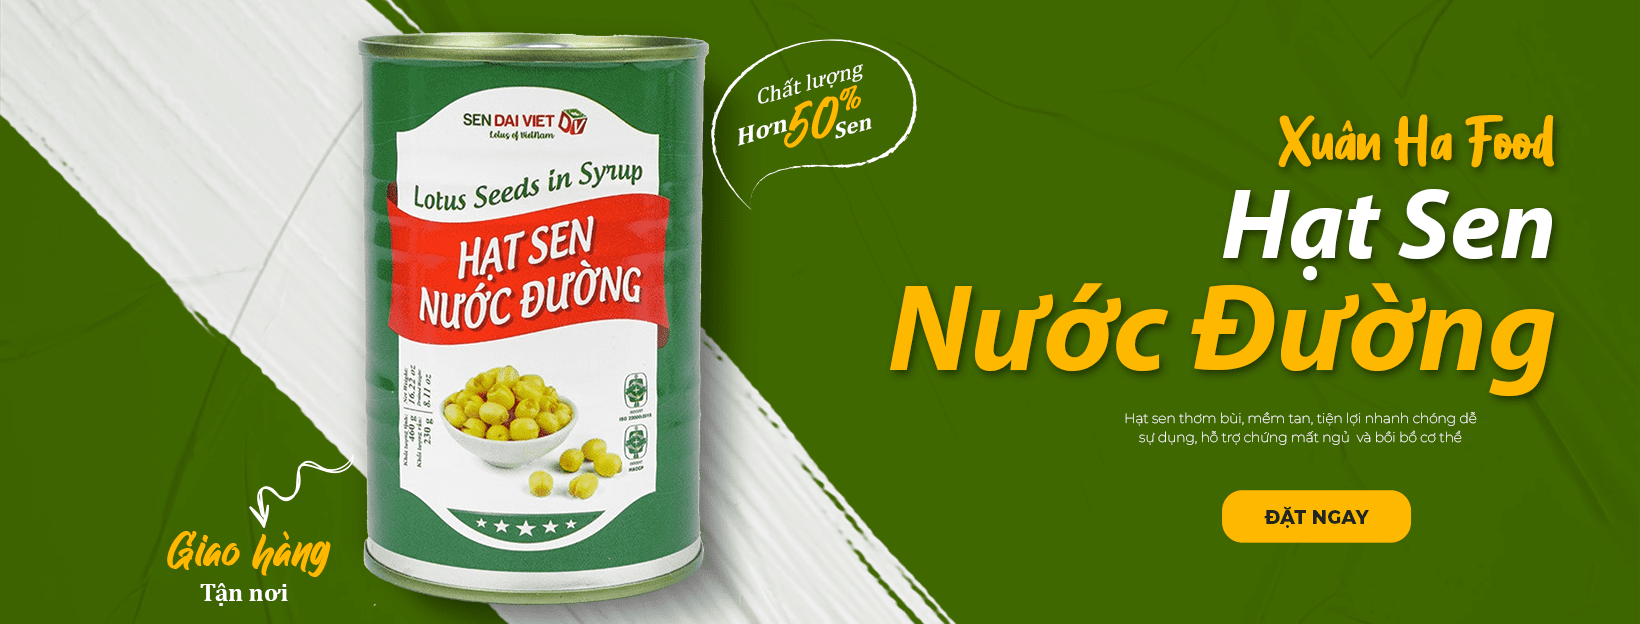 Banner Hat Sen Nuoc Duong Banh Mien Trung Xuan Ha Food 1 1